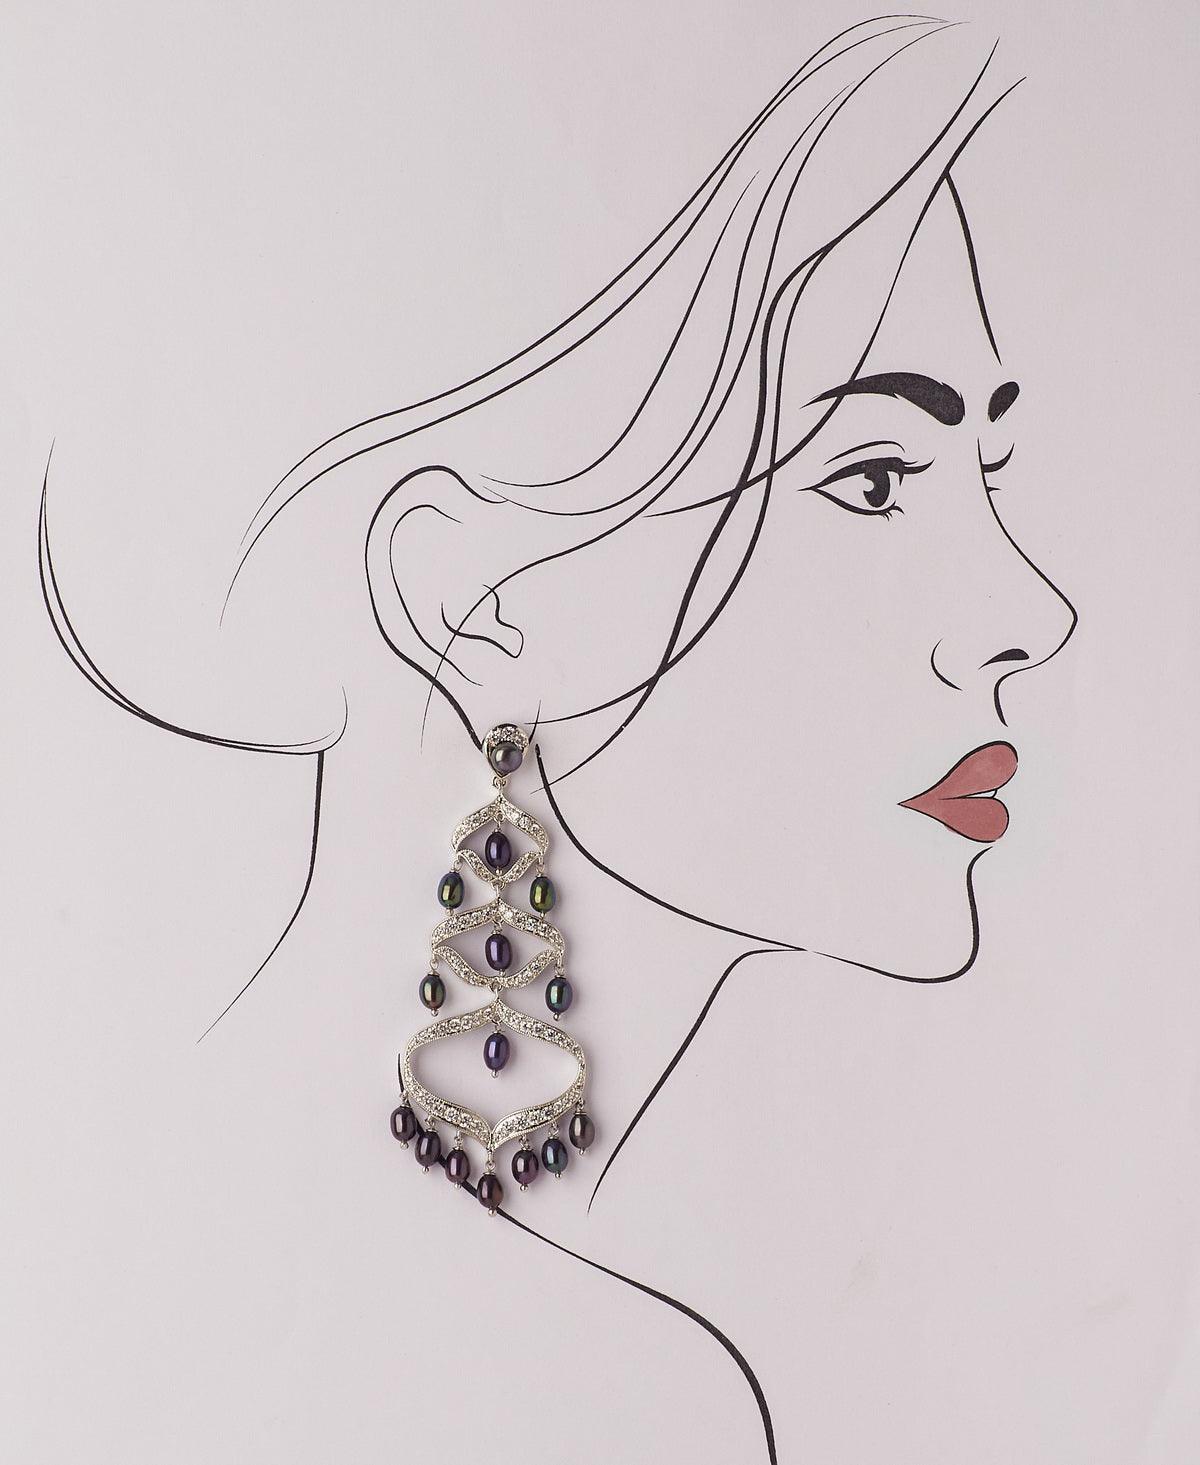 Faiza Regal Chandeliers Earring - Chandrani Pearls